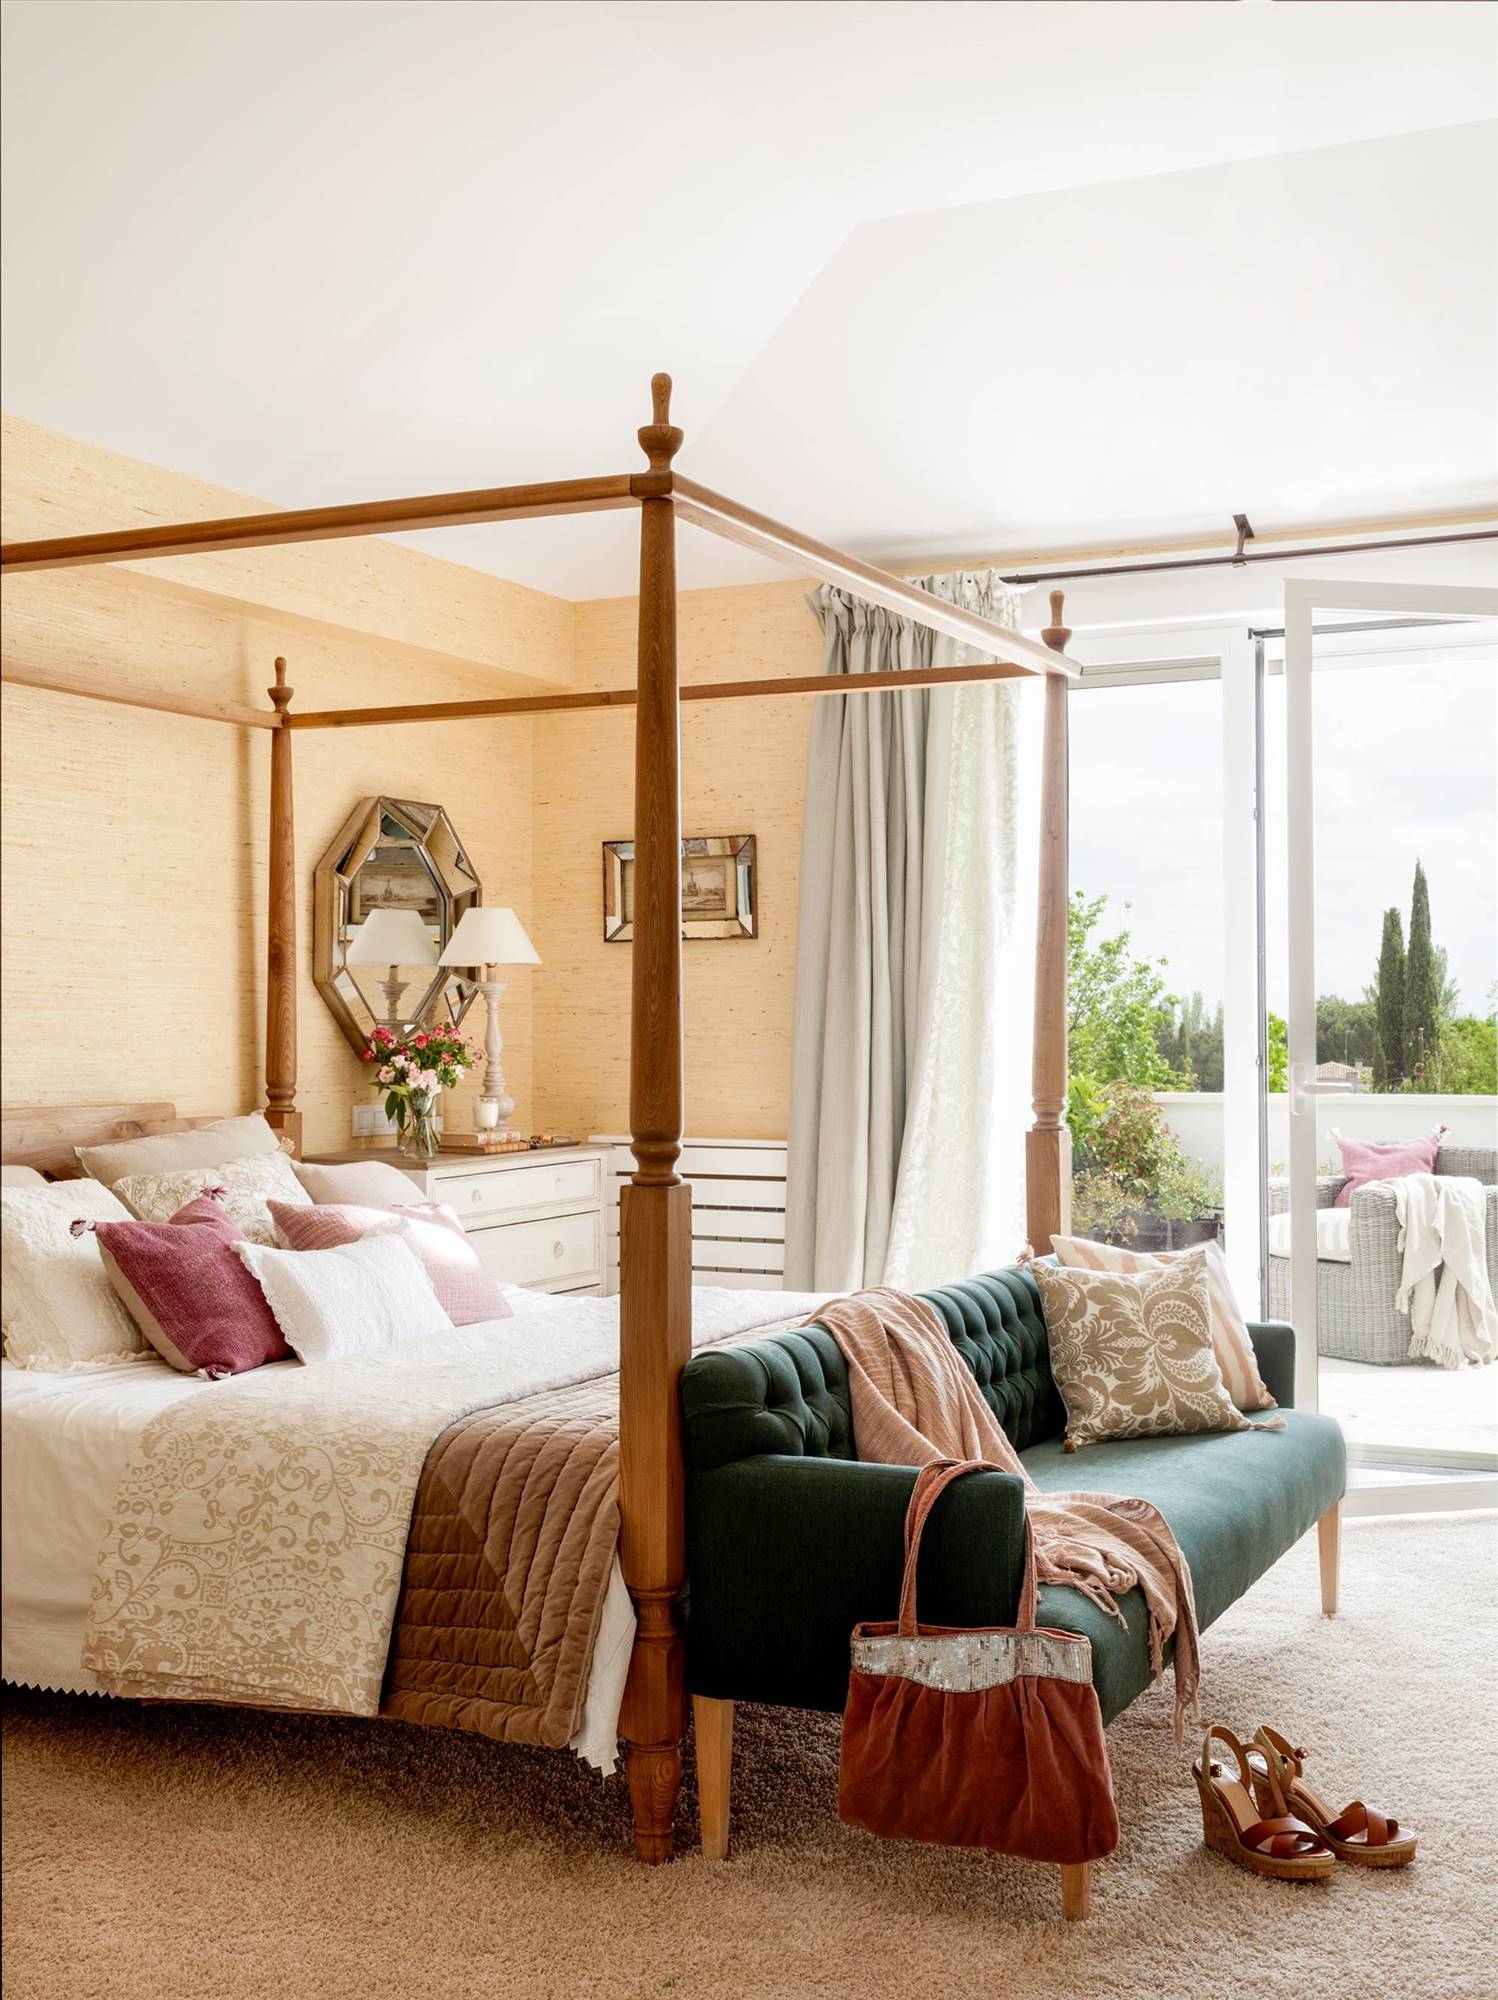 Dormitorio de estilo clásico con dosel de madera y sofá con tapizado capitoné verde a los pies 00435541